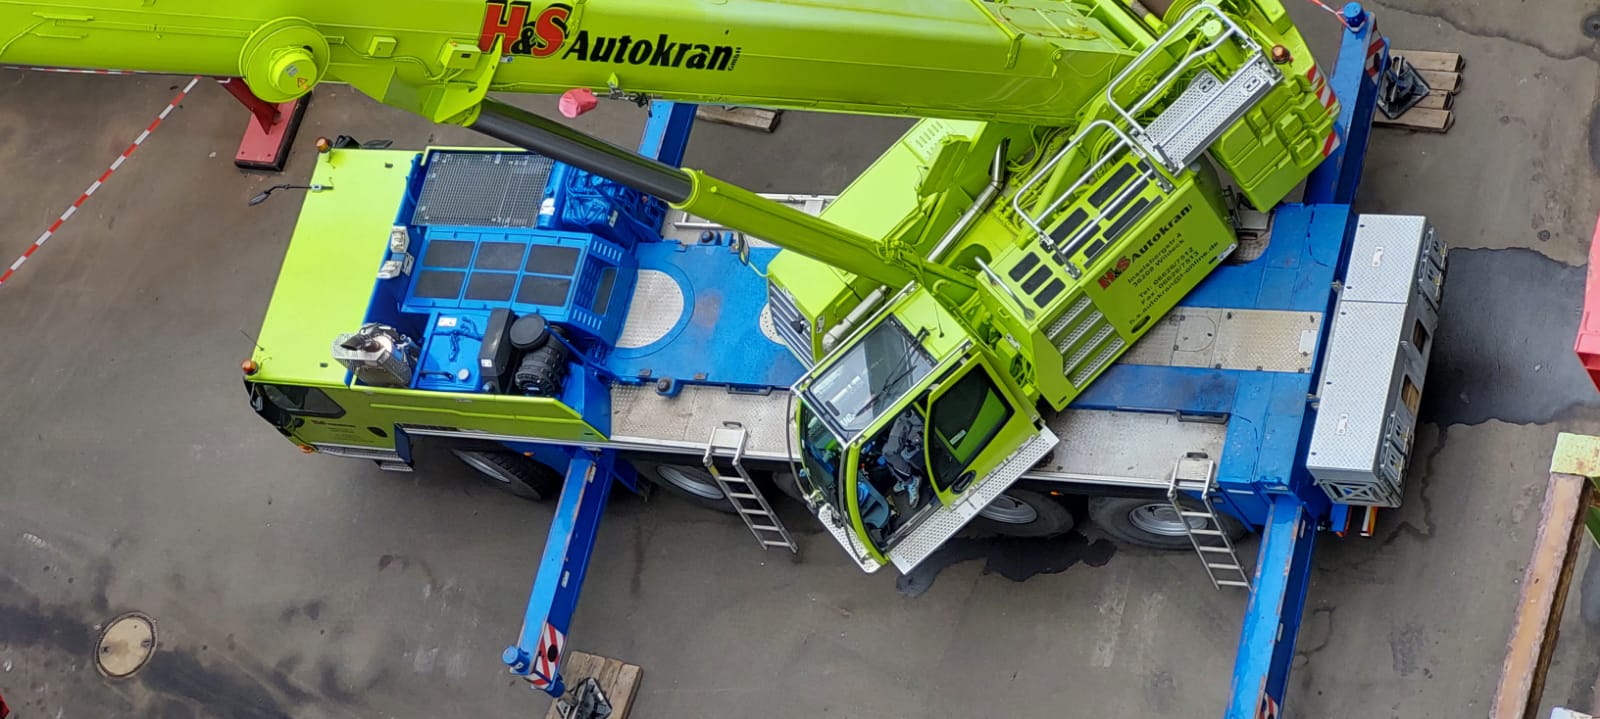 H & S Autokran GmbH - Kran im Einsatz